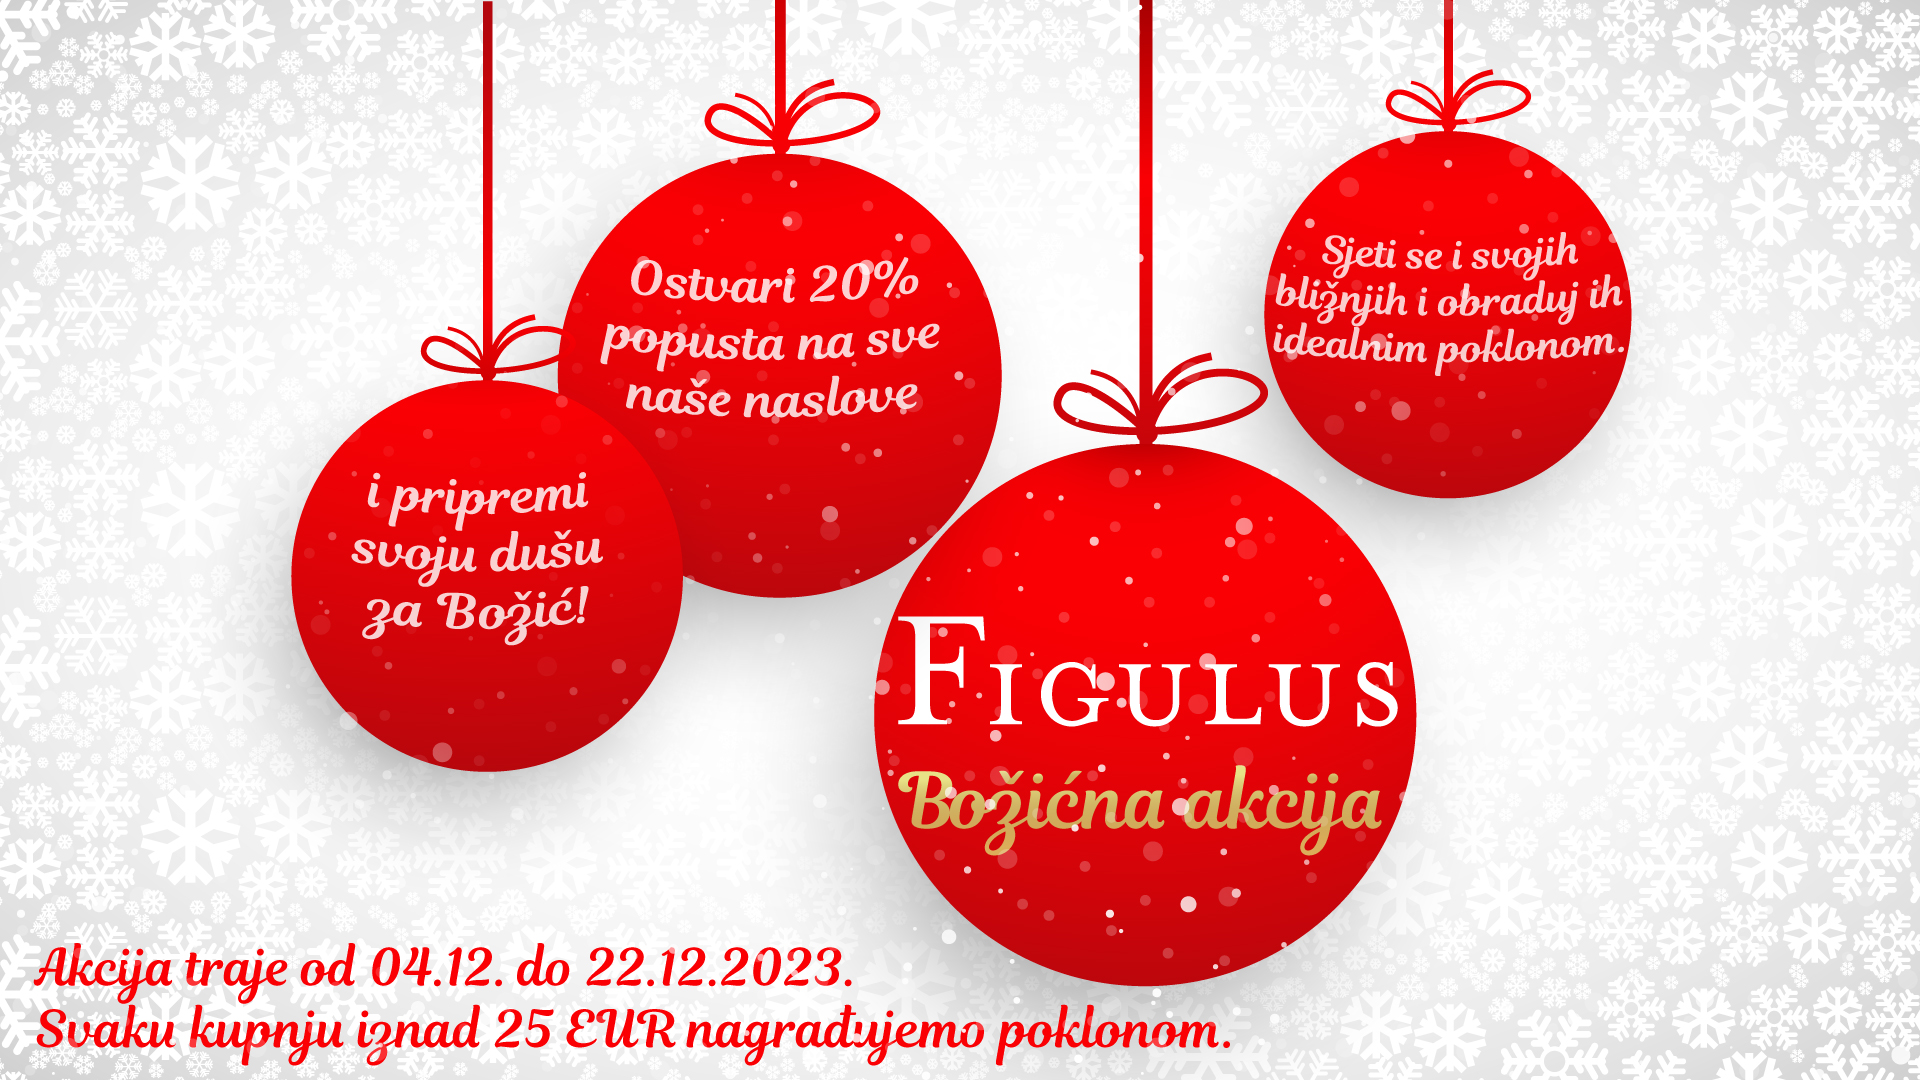 Božićna akcija Biblioteke Figulus traje do 22.12. Potraži sva naše naslove snižene 20%